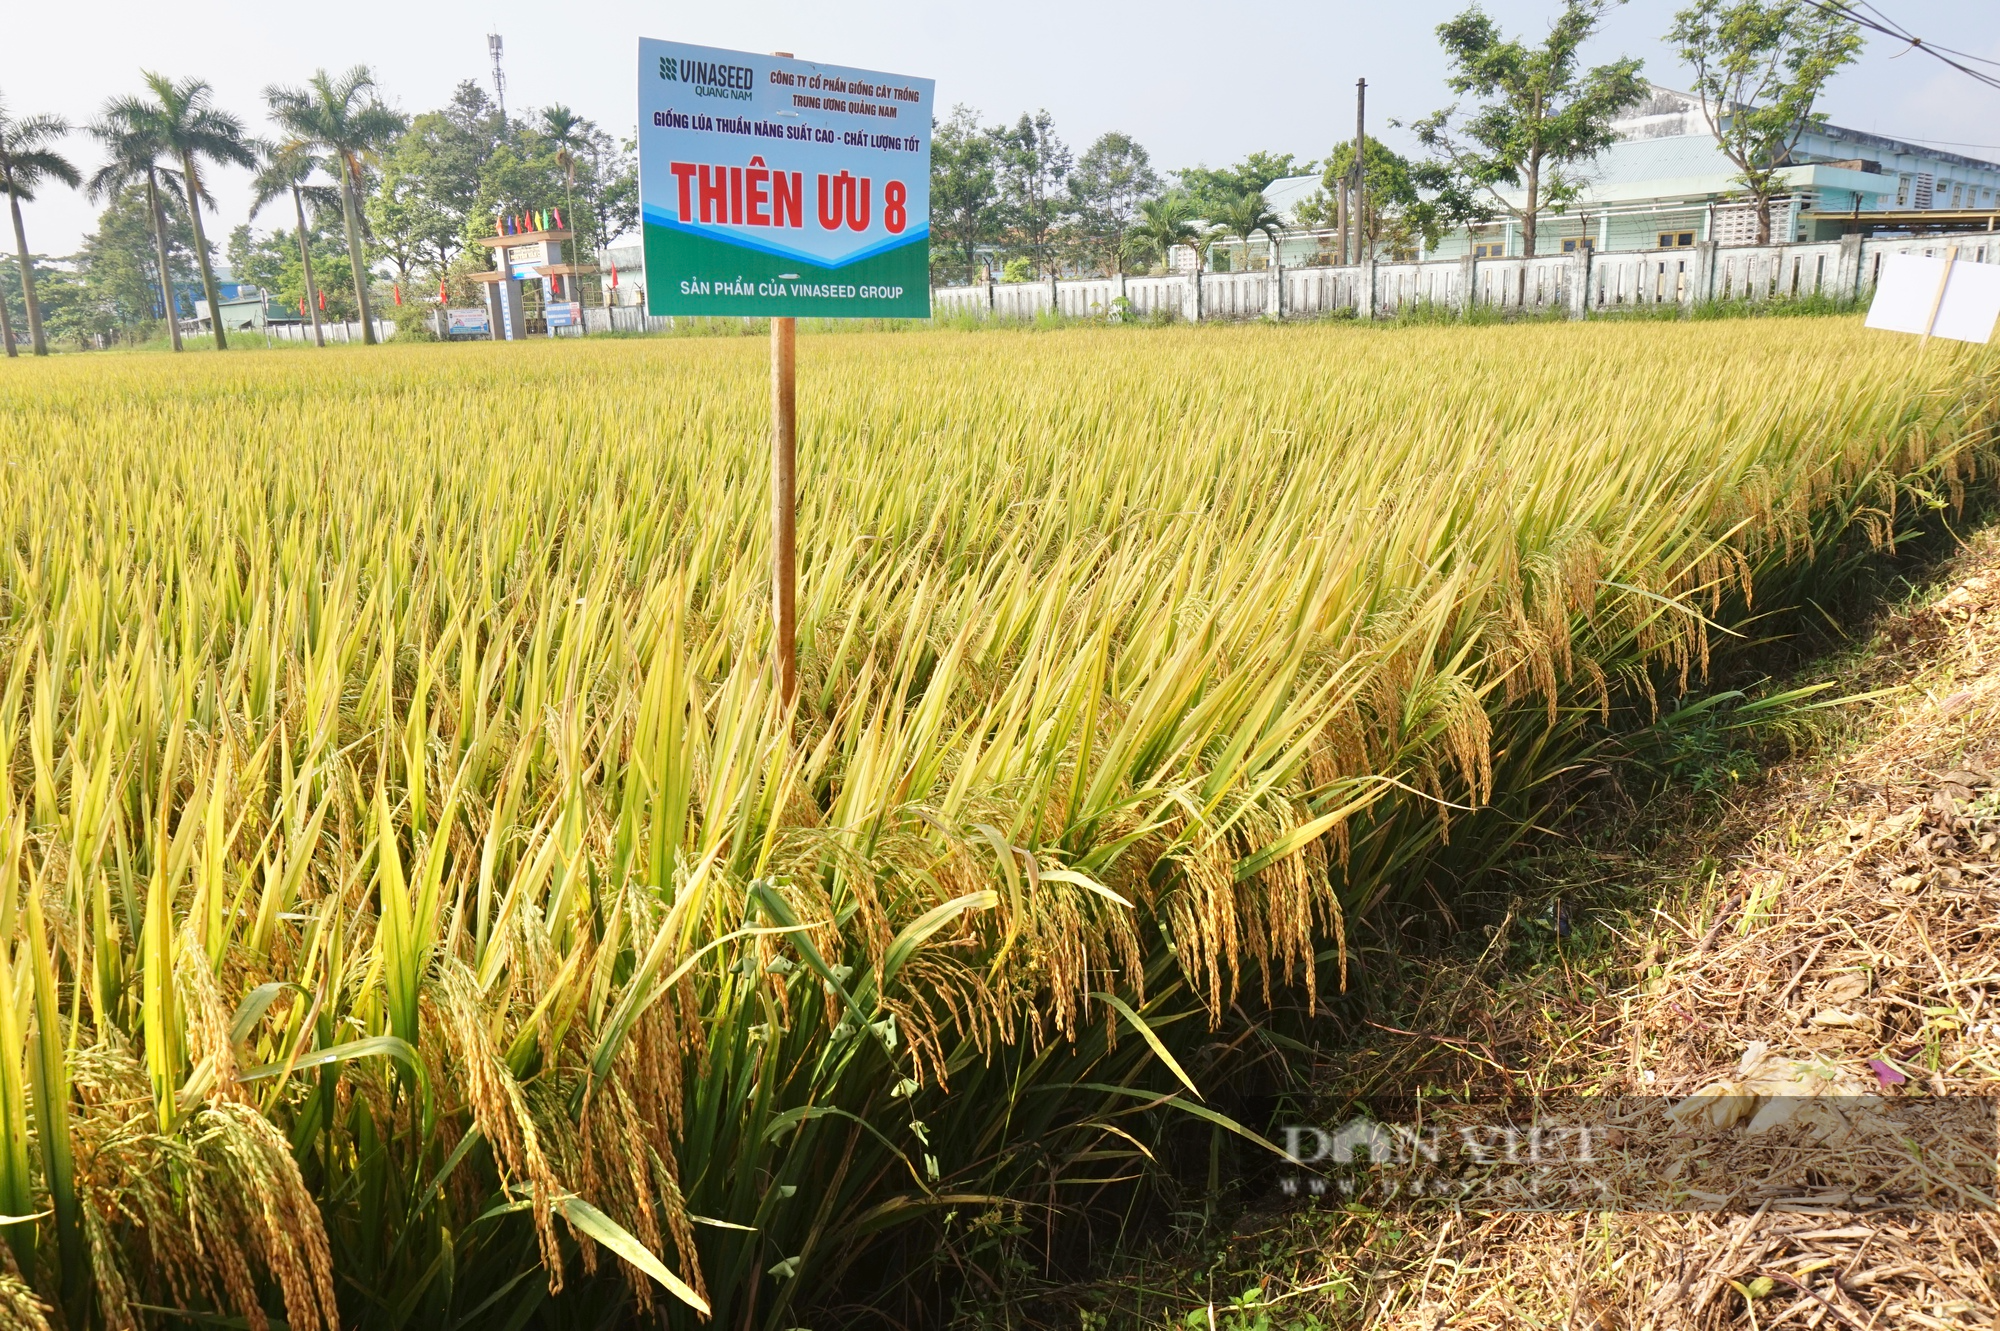 Bộ tứ lúa giống của Vinaseed “tỏa sáng” rực rỡ trên nhiều chân đất, nông dân xứ Quảng mê mẩn - Ảnh 3.